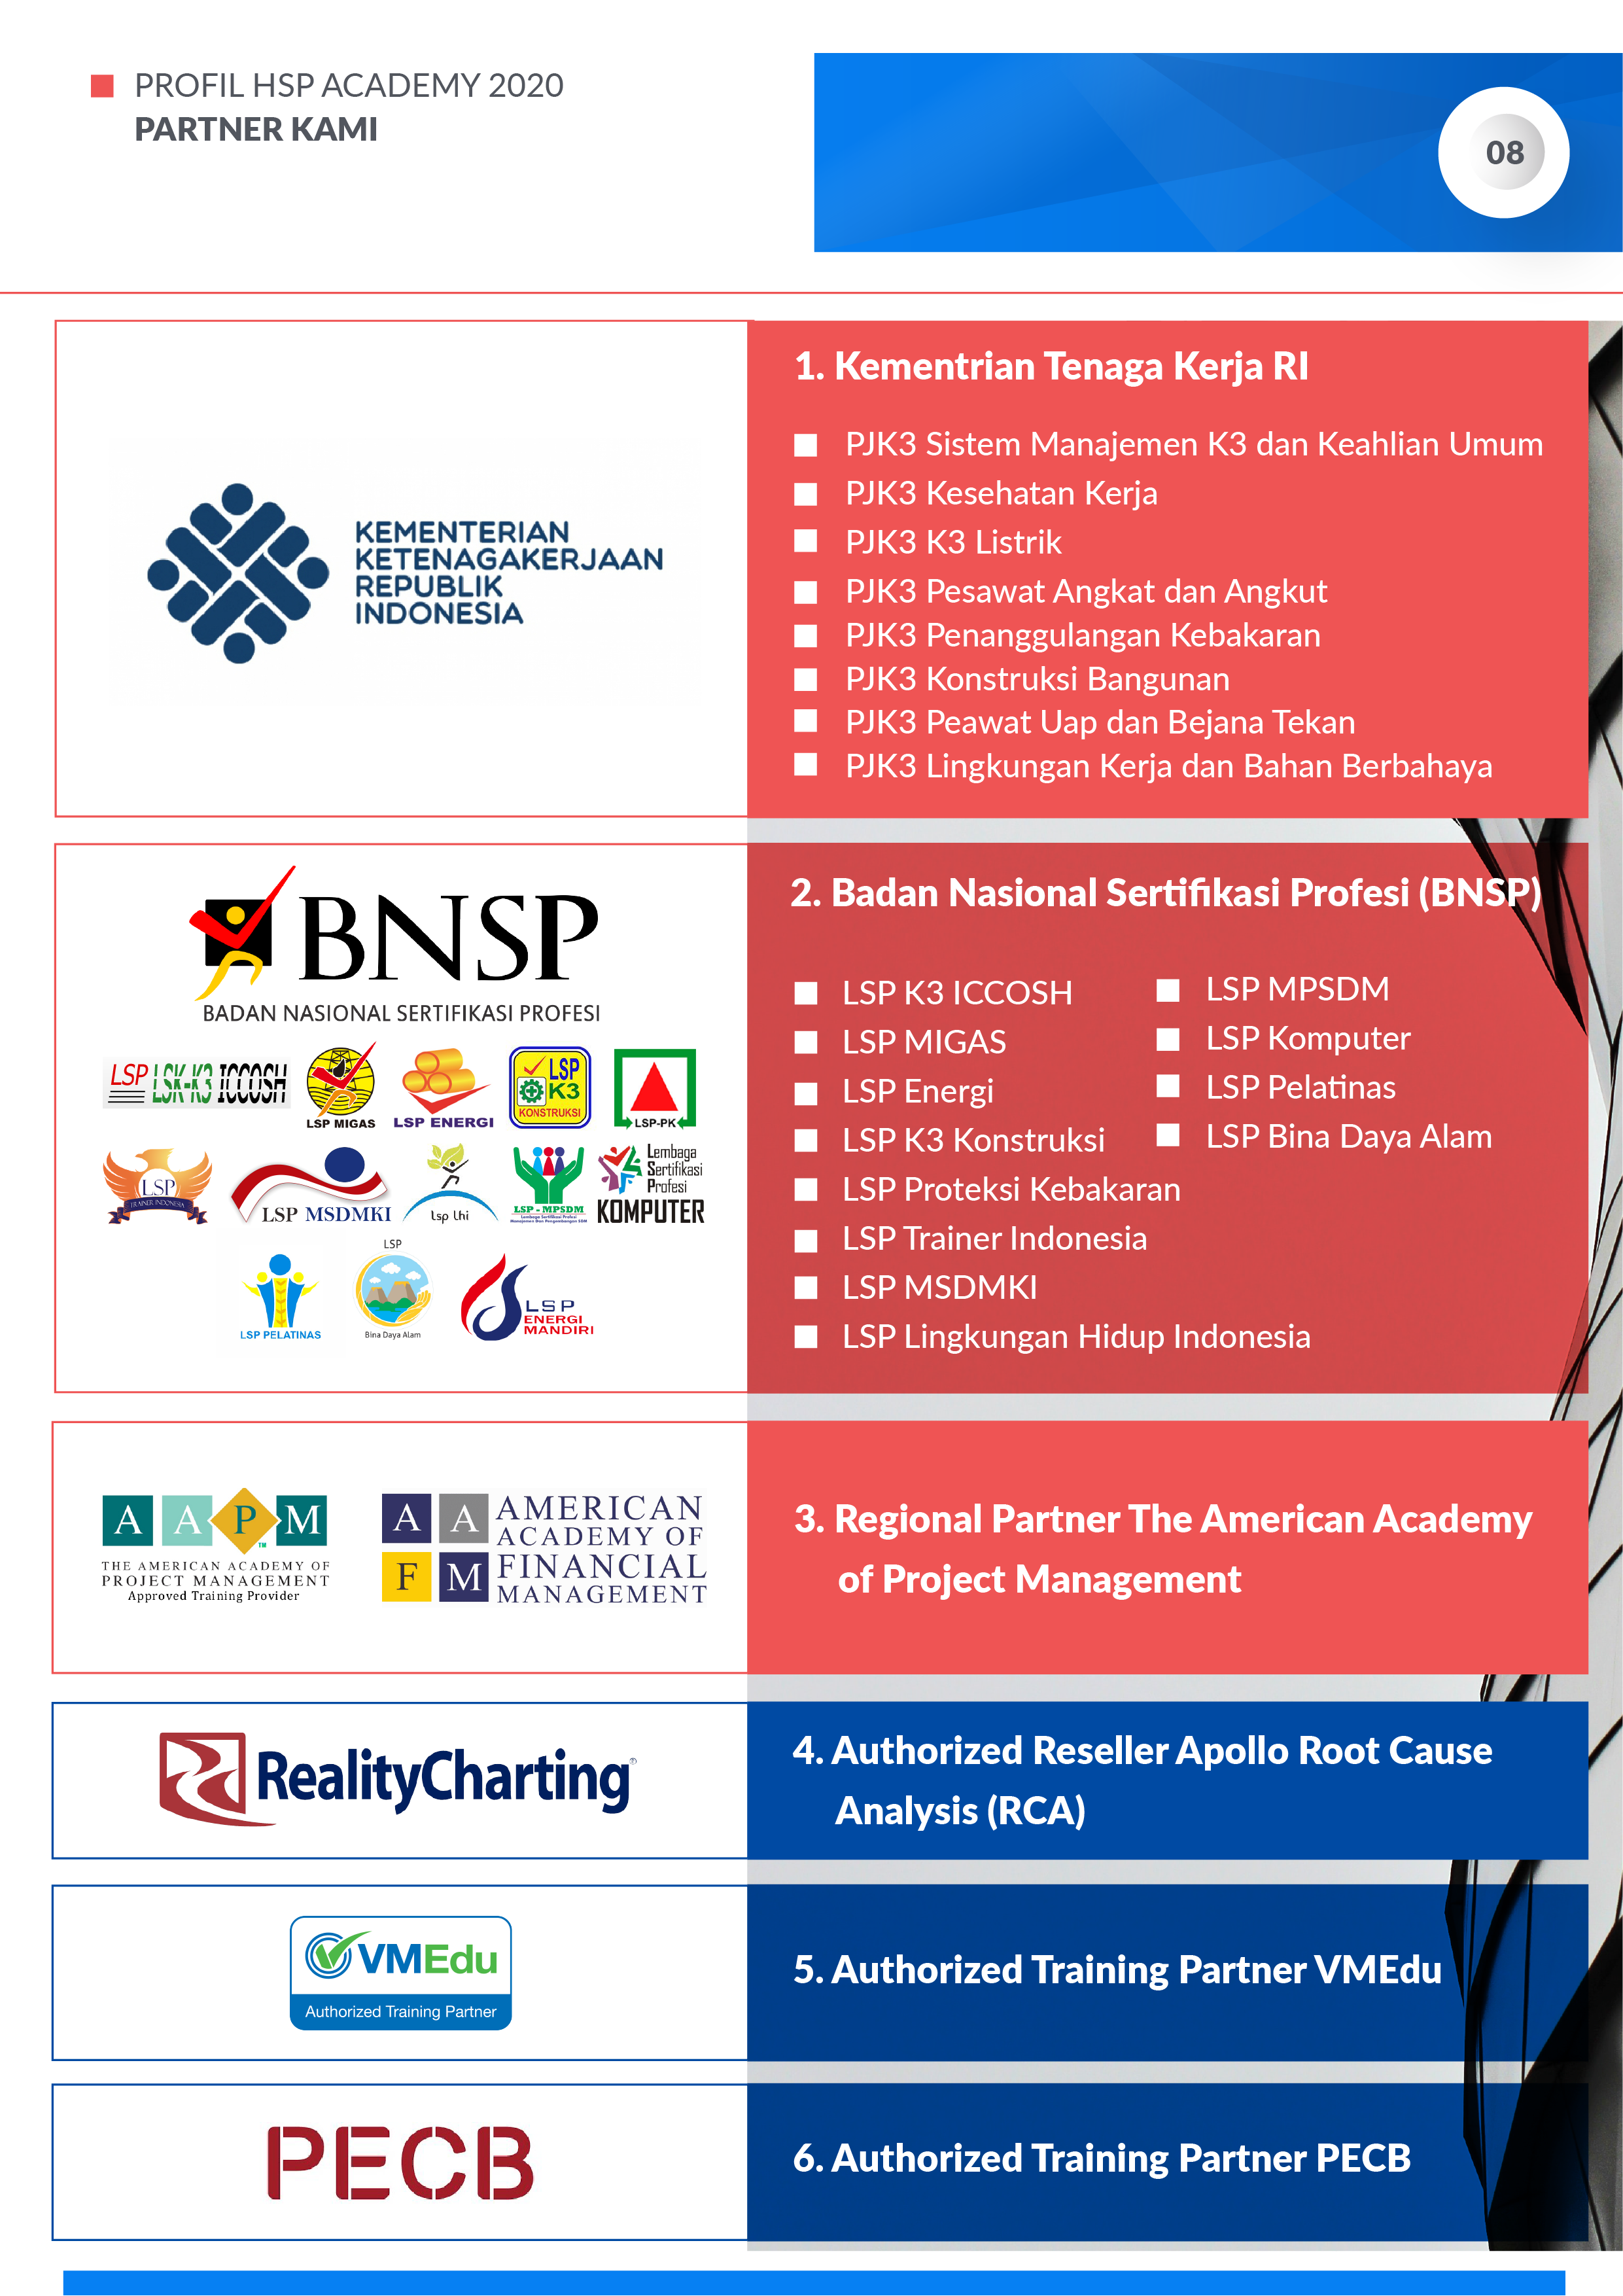 Profil-Perusahaan-HSP-Academy-2020-Bagian-1-12